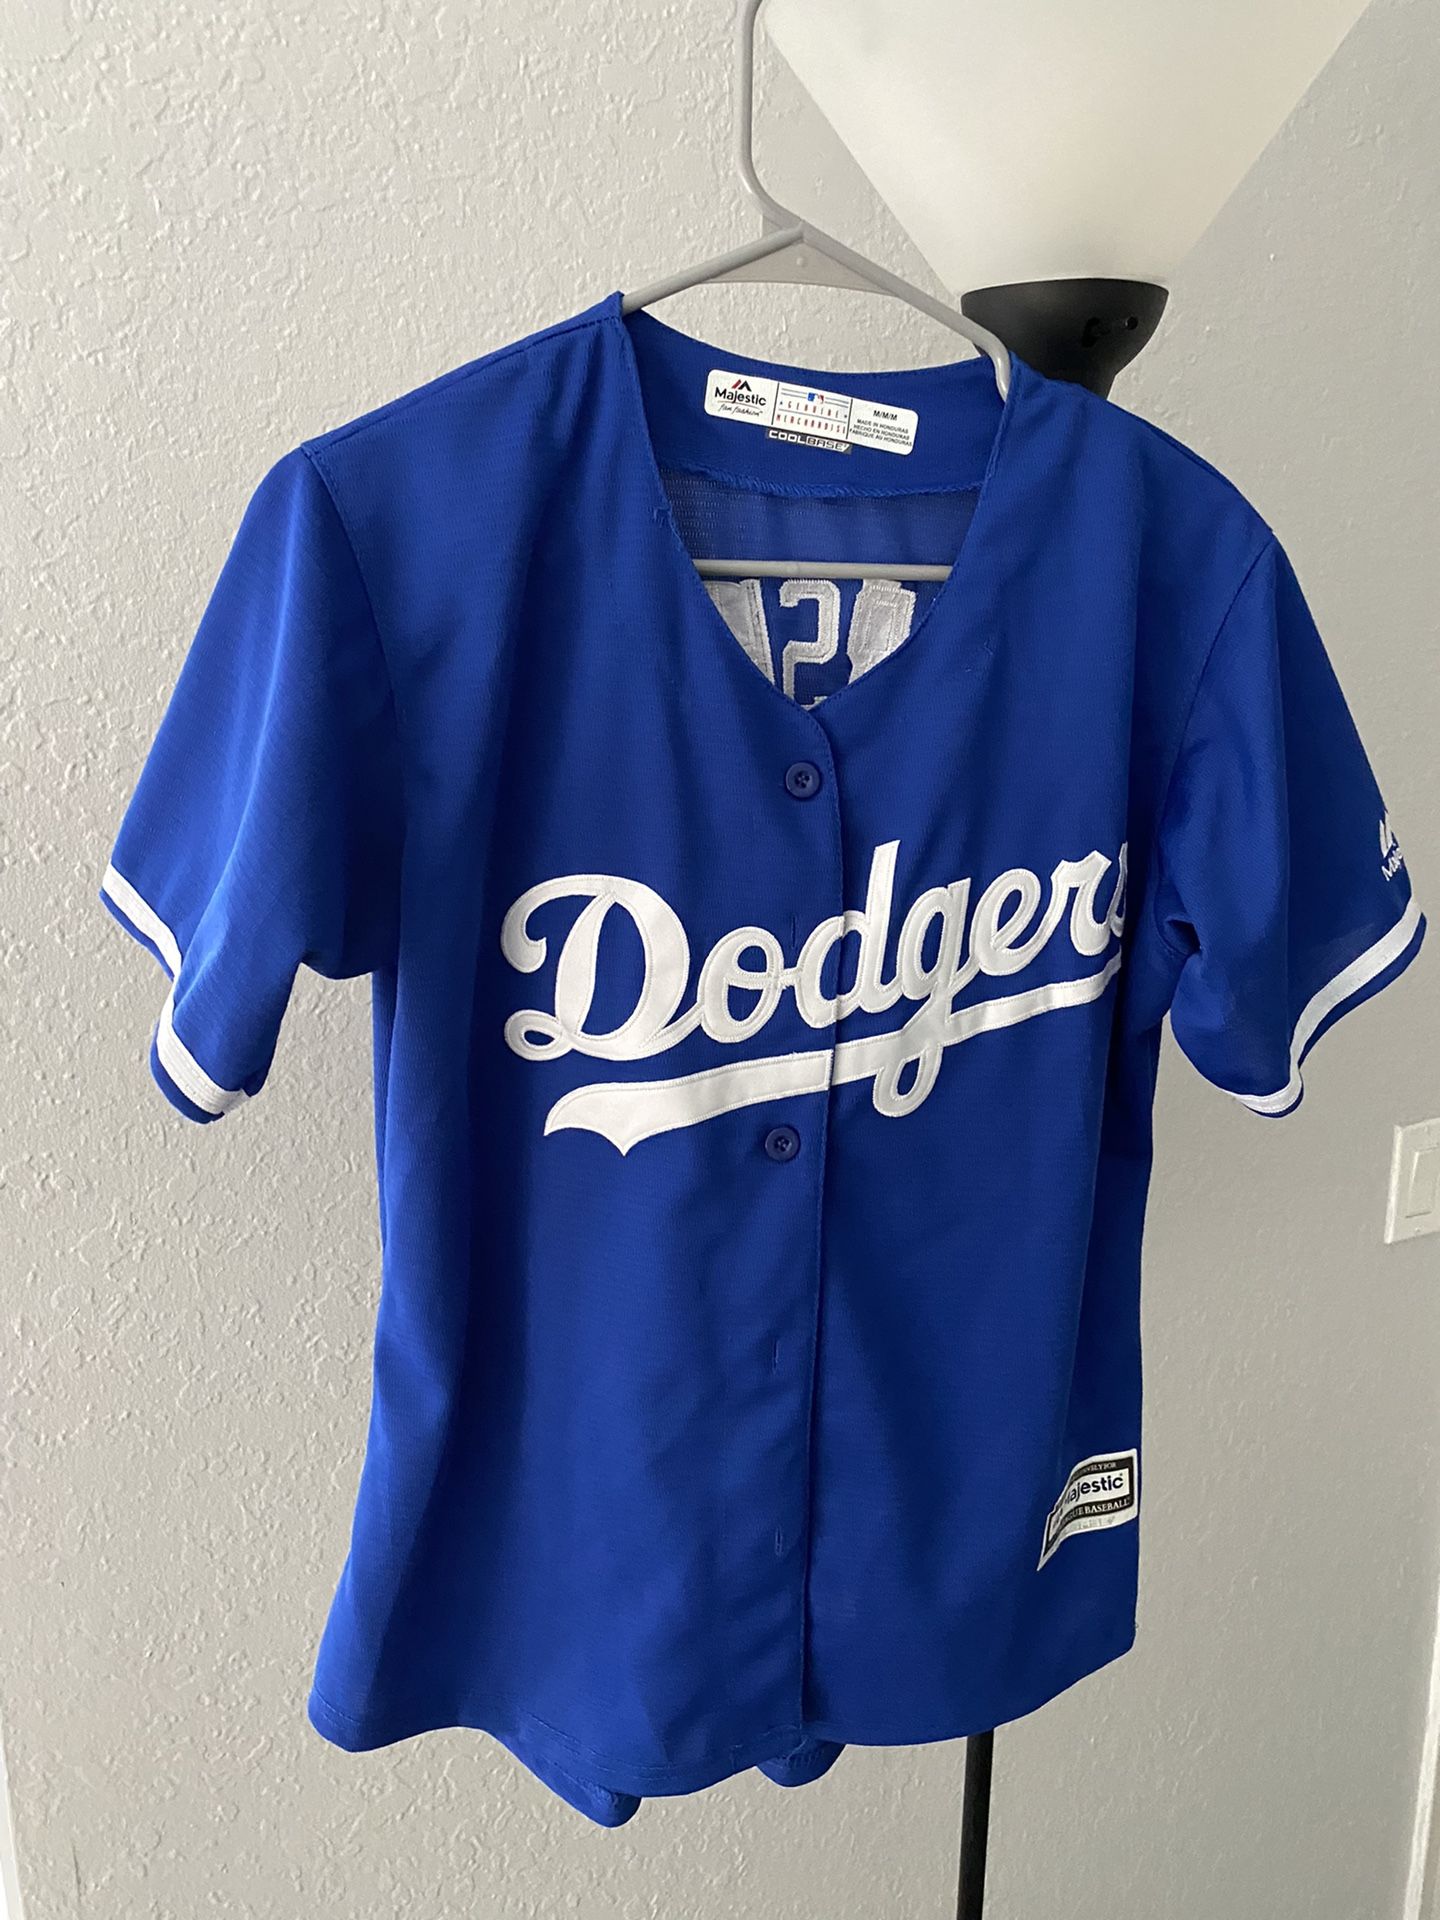 Women's Dodgers Jersey Size M for Sale in Riverside, CA - OfferUp